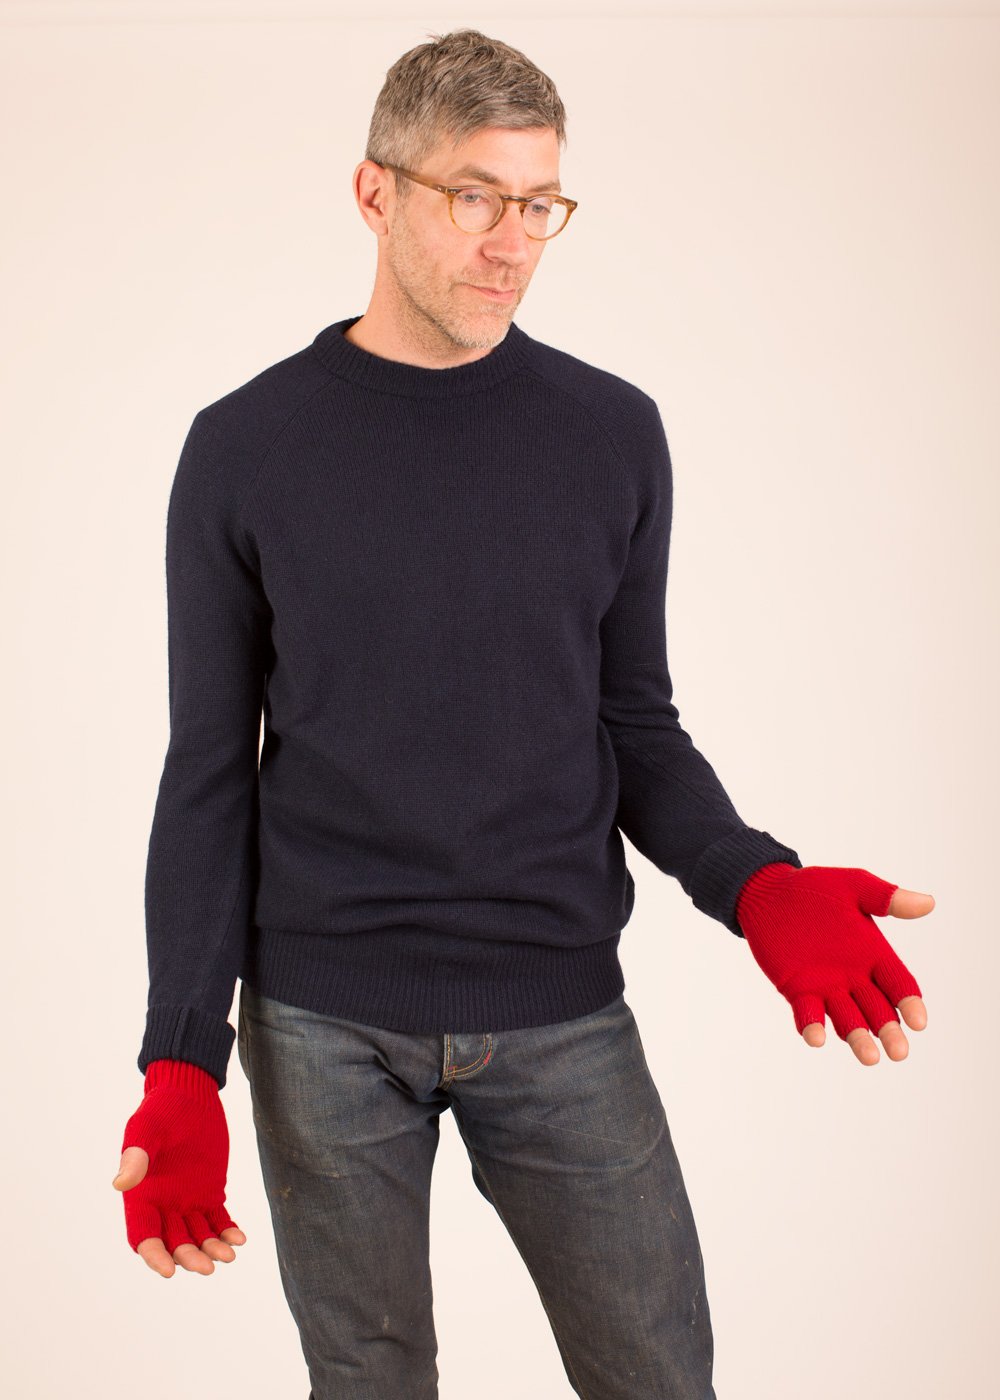 The Men's Fingerless Gloves